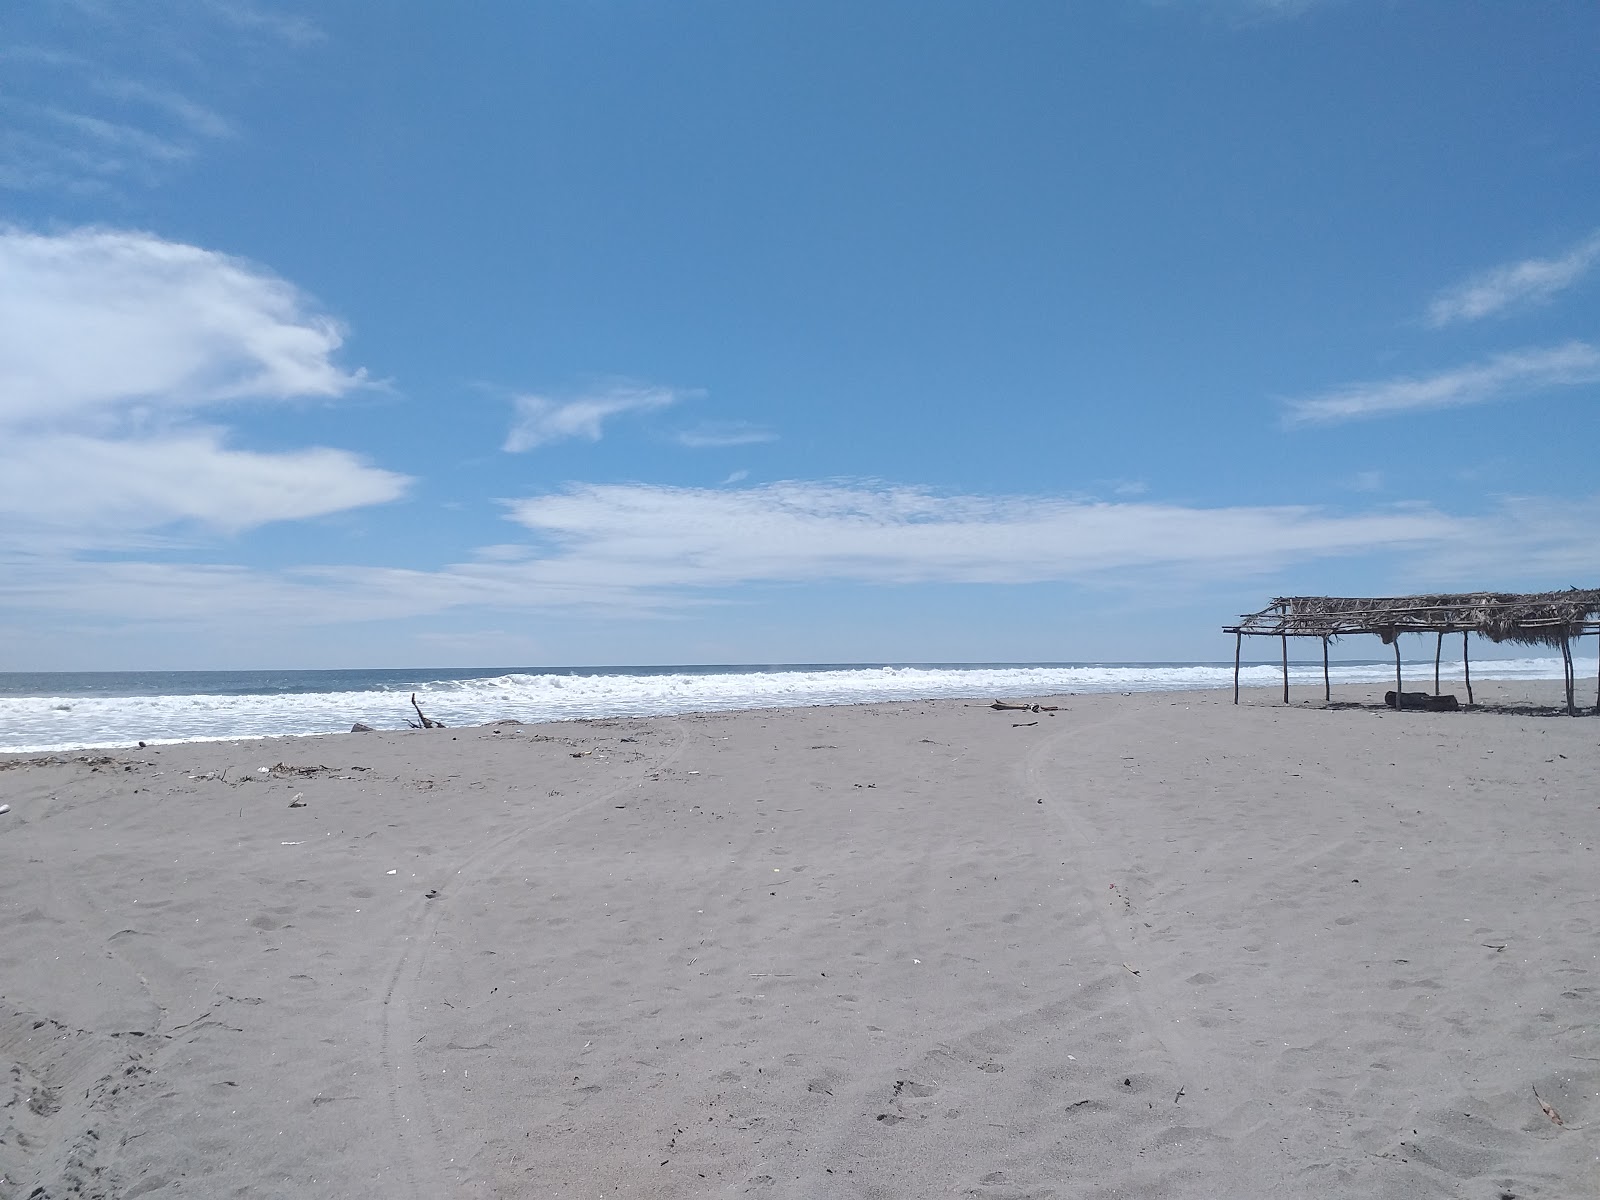 Tasajera beach'in fotoğrafı gri kum yüzey ile